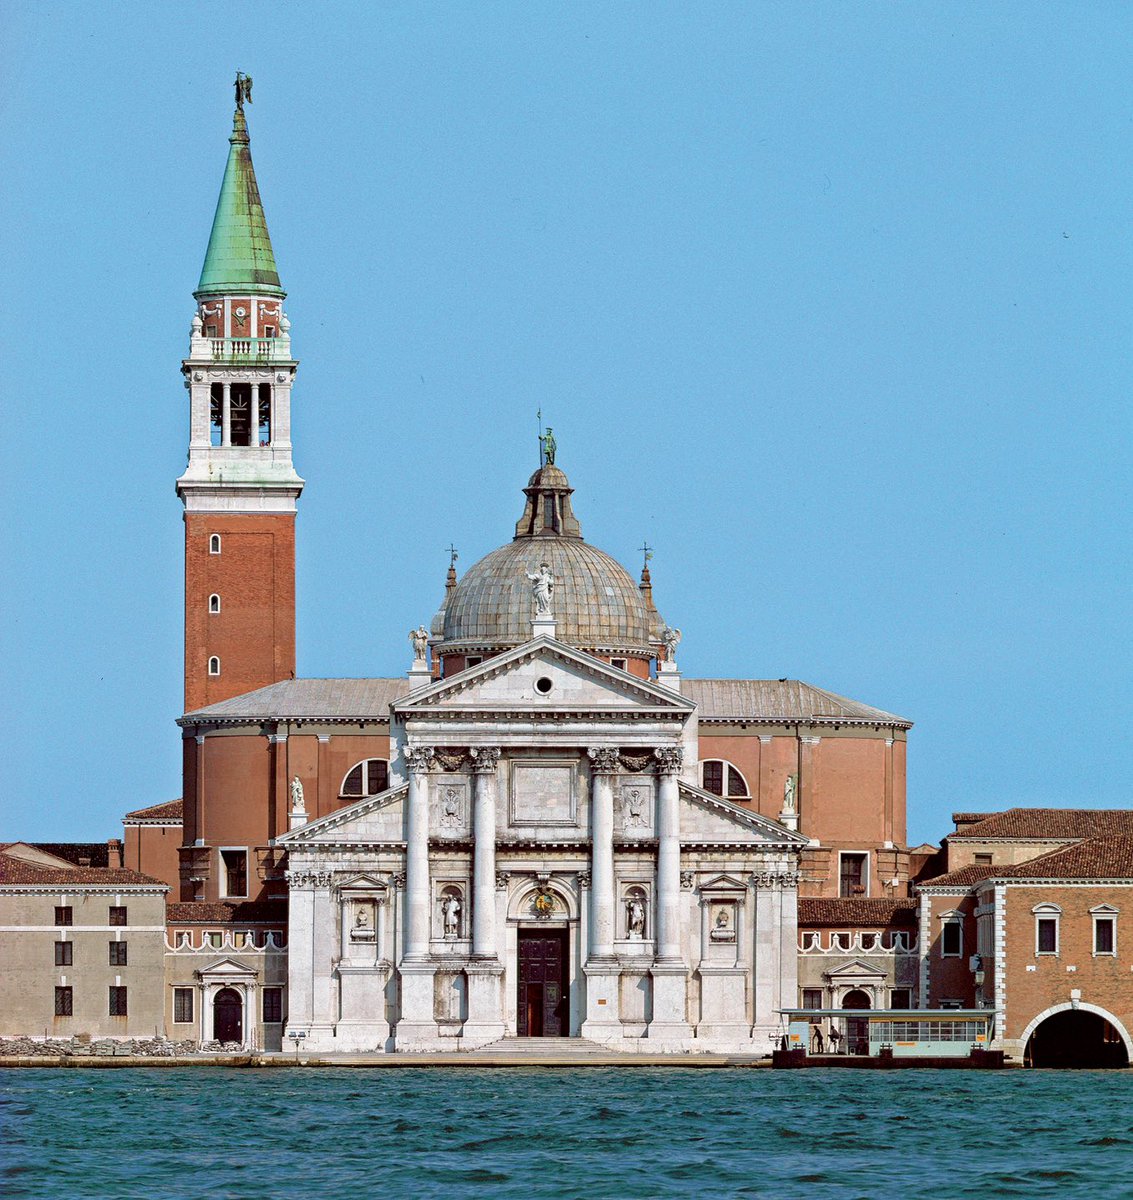 Buongiorno ! 😍 30.11.1508
'Basilica di San Giorgio Maggiore'
#AndreaPalladio
#30novembre 
#BuongiornoATutti